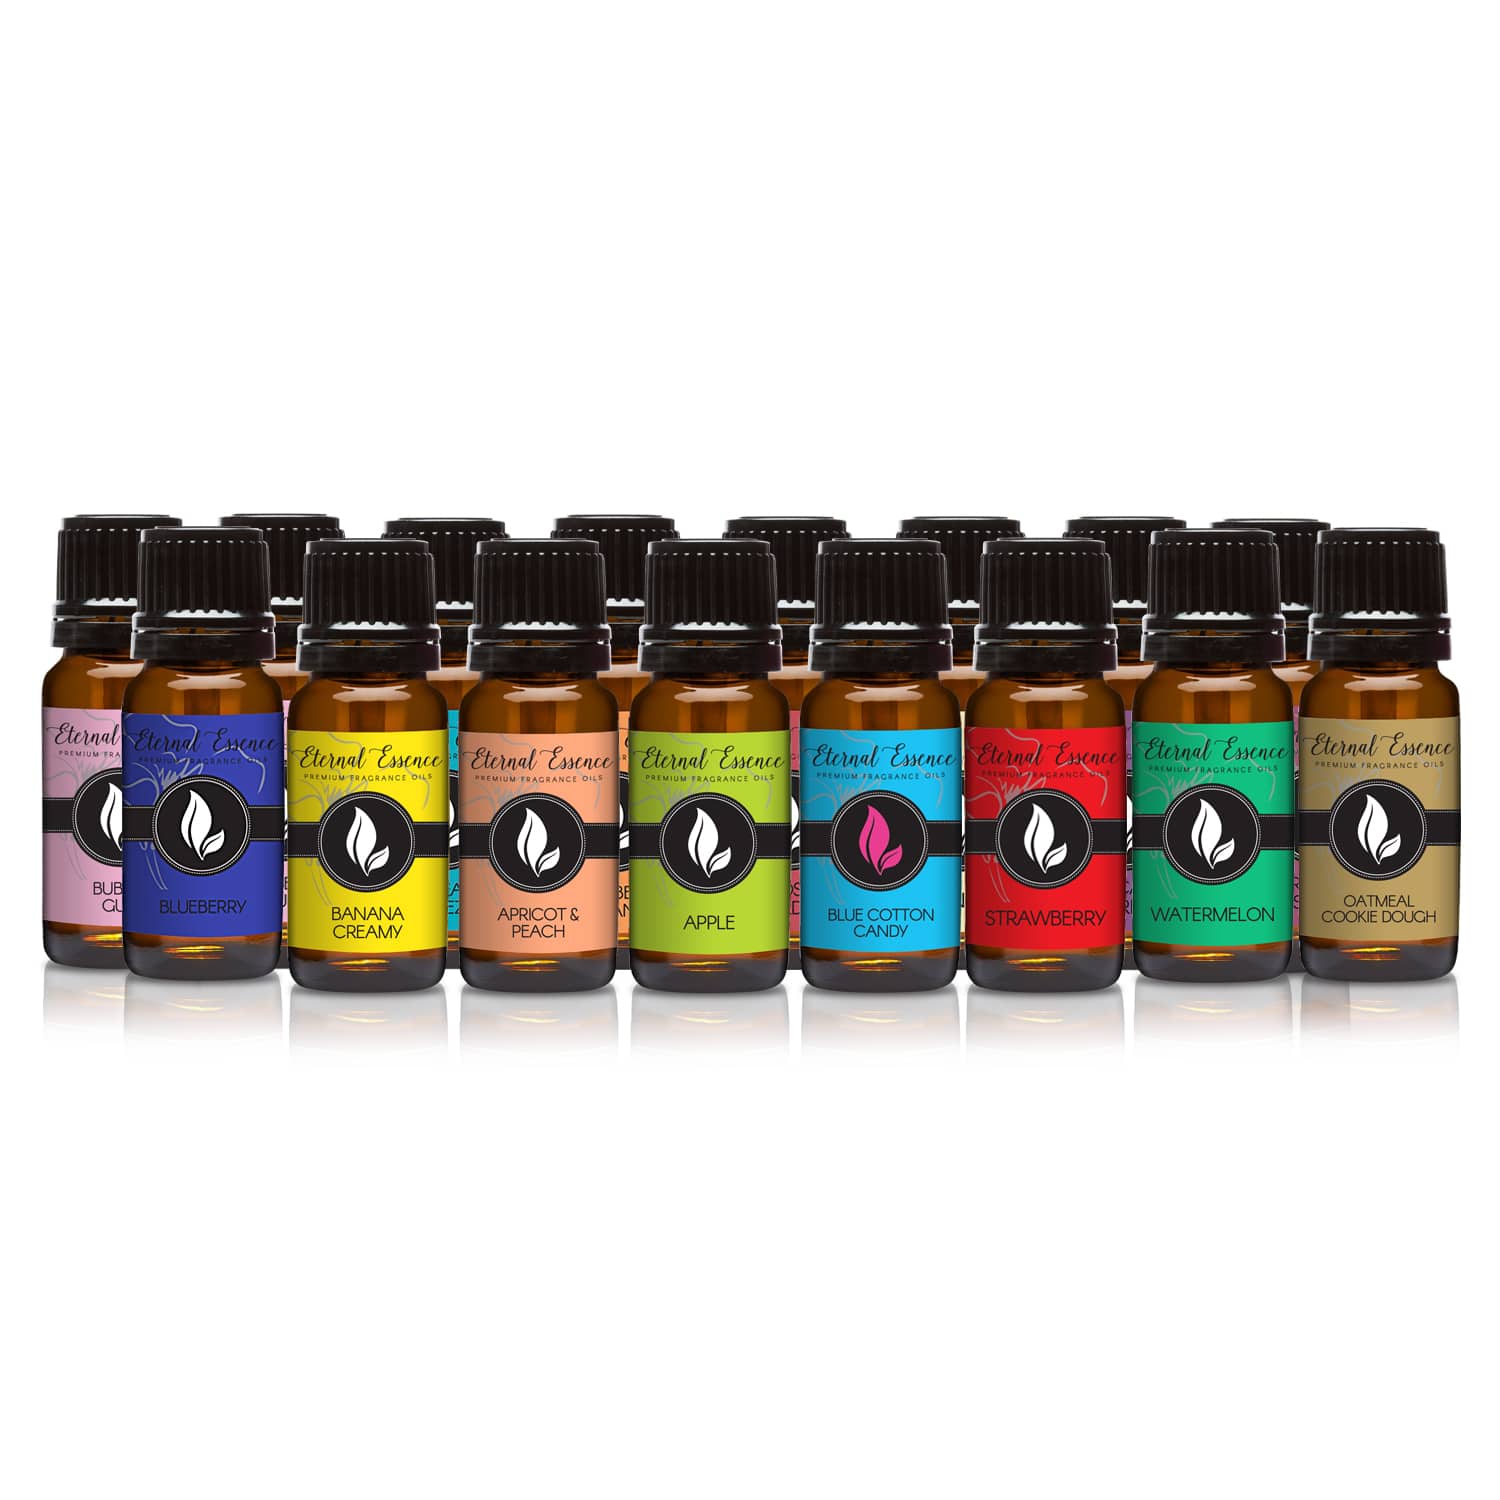 Pair (2) - Honeysuckle & Sweet Pea - Premium Fragrance Oil Pair - 10ML –  Eternal Essence Oils